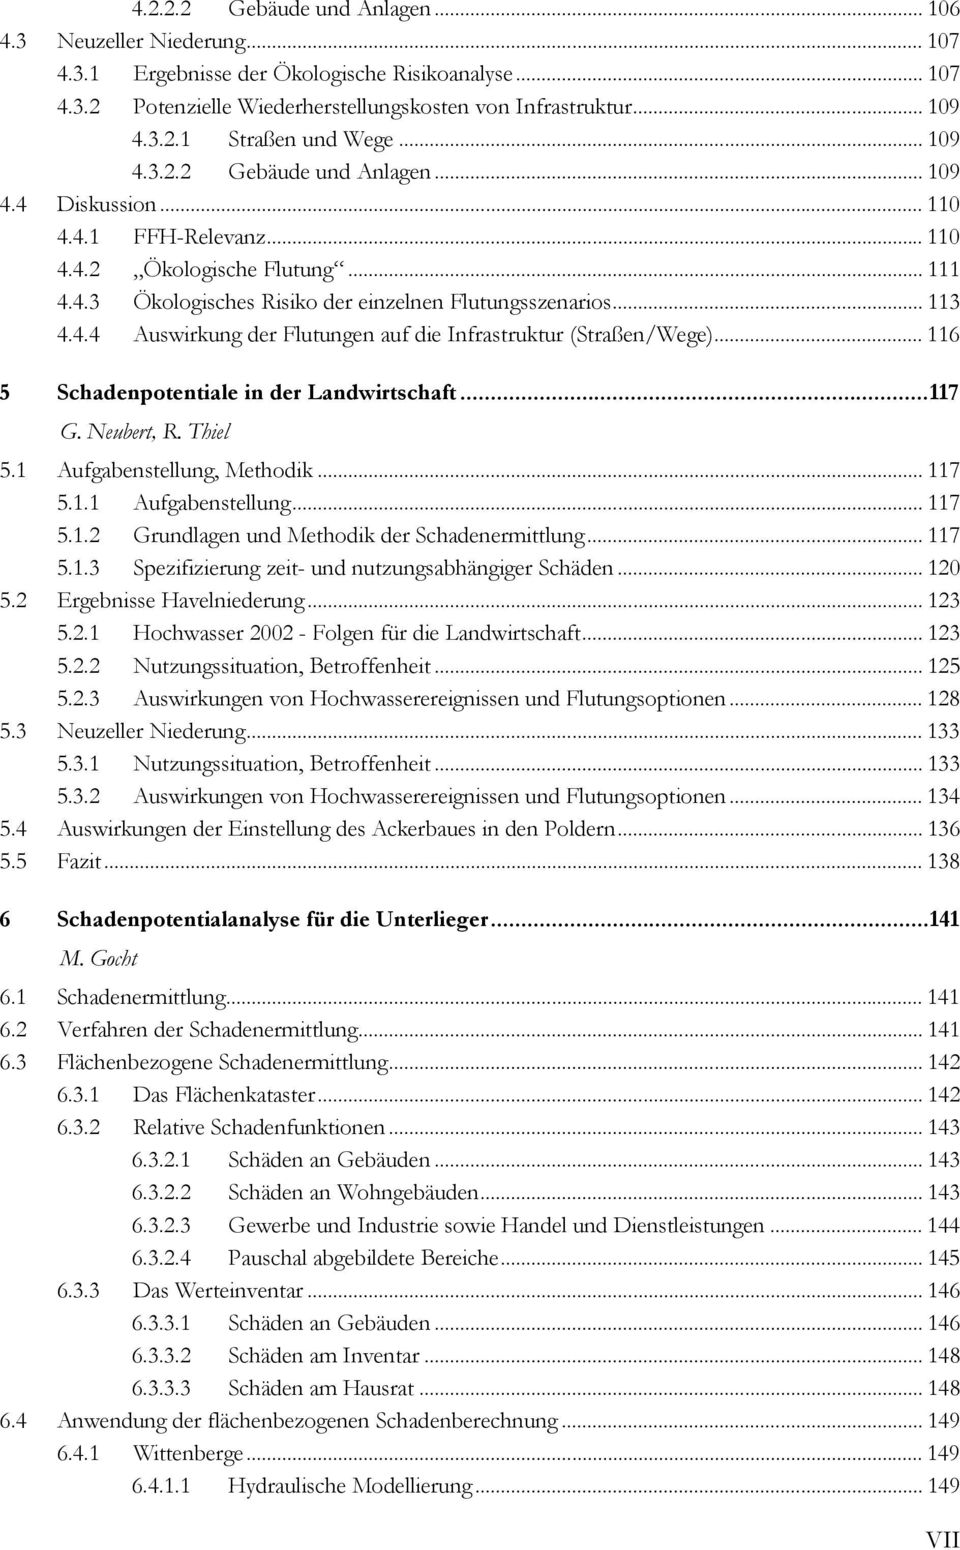 .. 116 5 Schadenpotentiale in der Landwirtschaft...117 G. Neubert, R. Thiel 5.1 Aufgabenstellung, Methodik... 117 5.1.1 Aufgabenstellung... 117 5.1.2 Grundlagen und Methodik der Schadenermittlung.